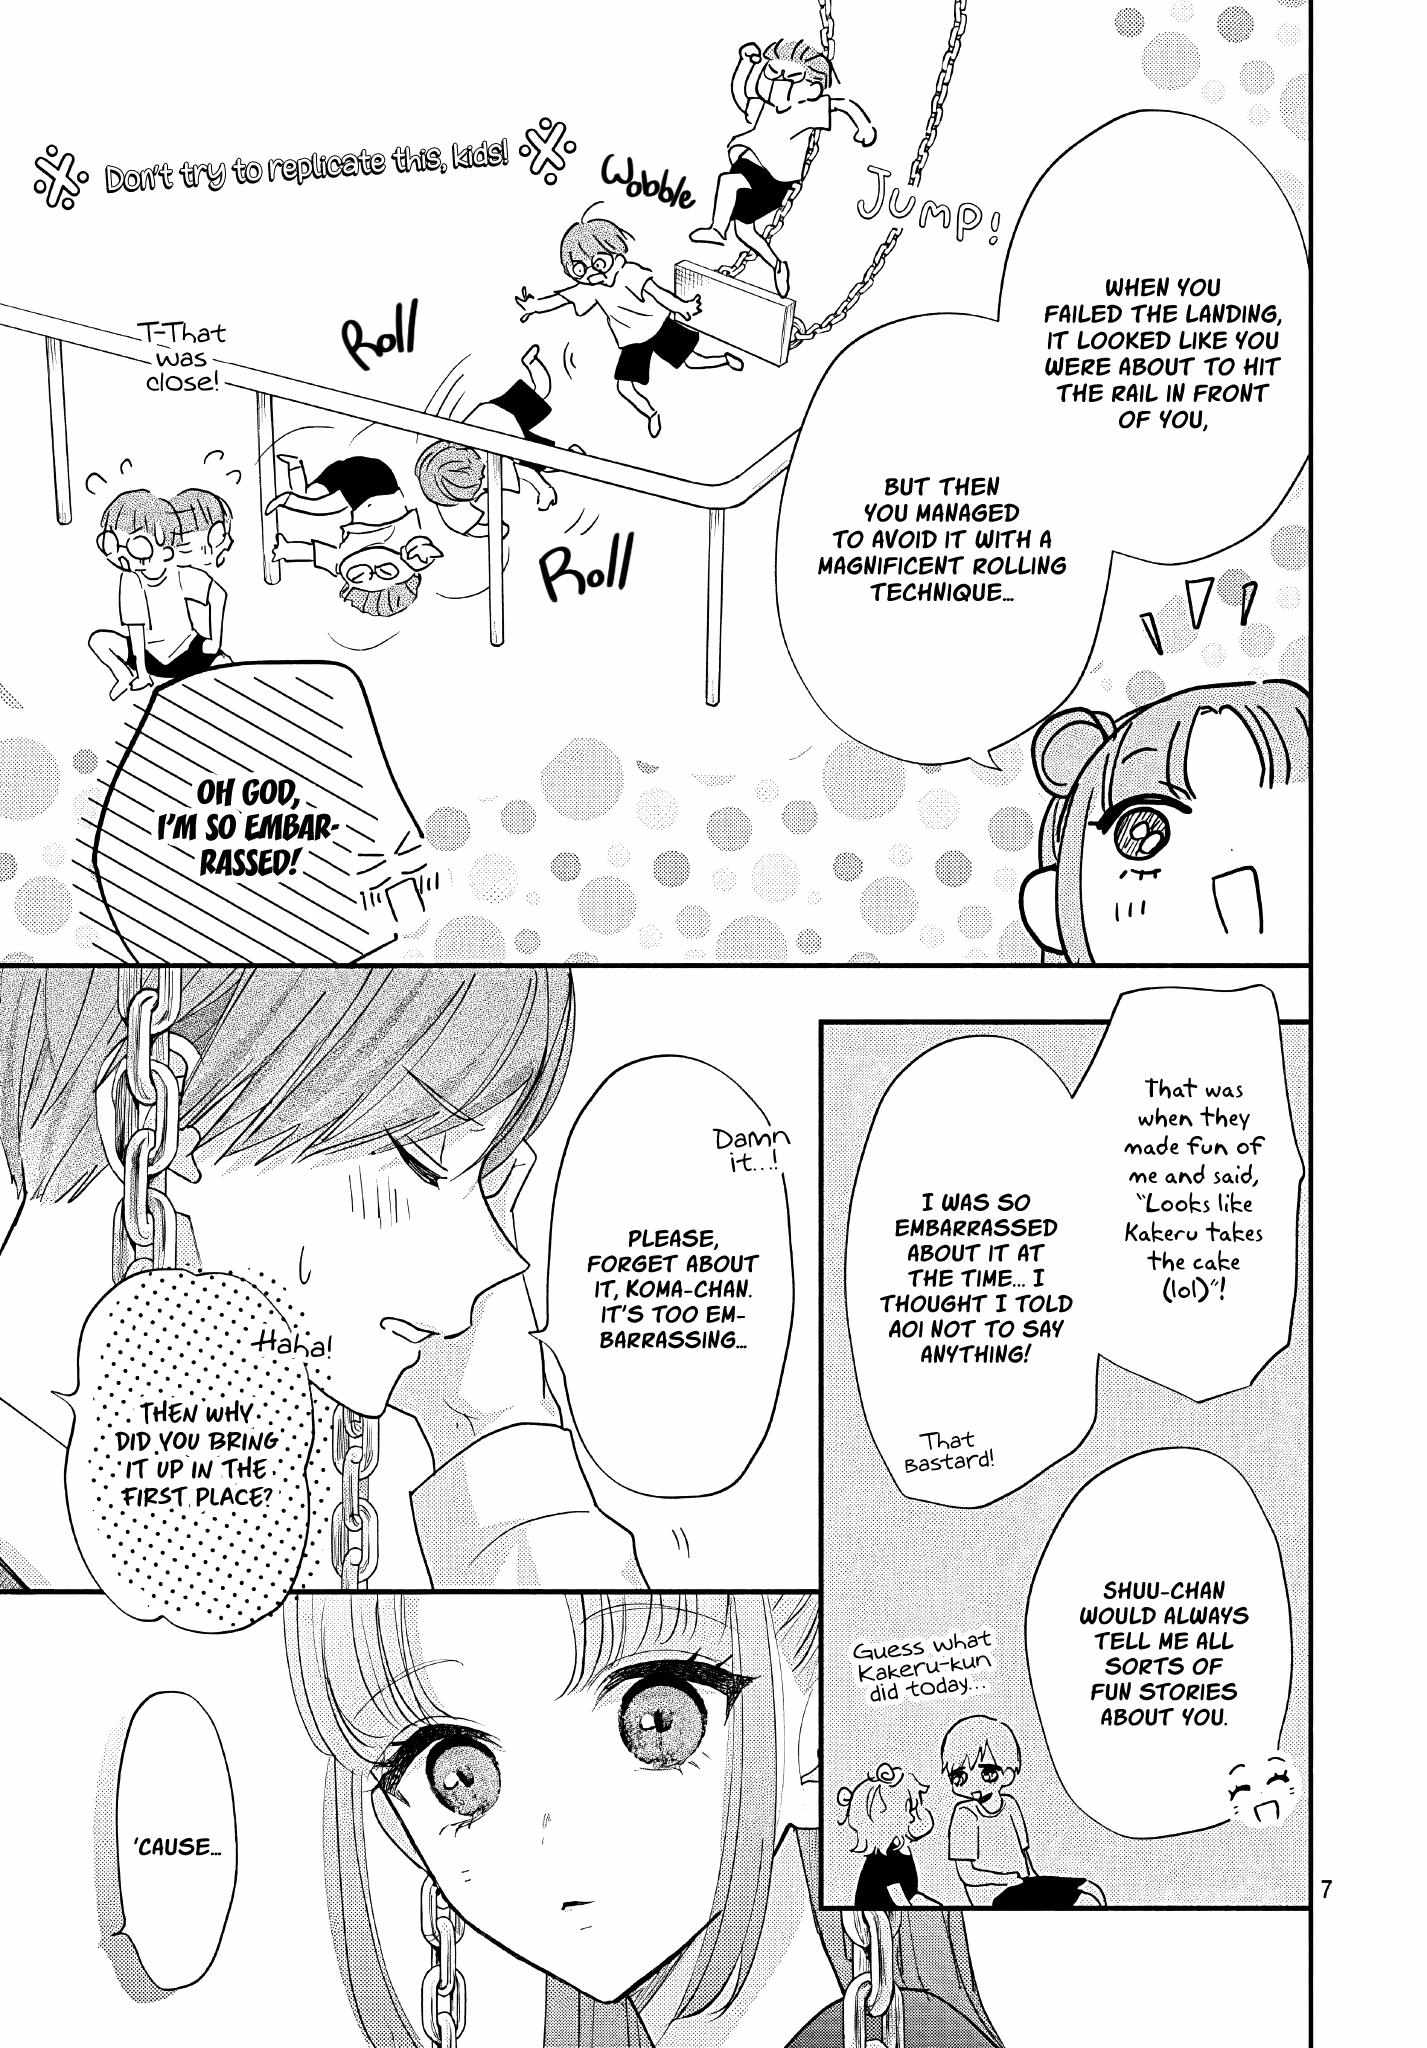 I Hate Komiyama - 11 page 8-2b6beada